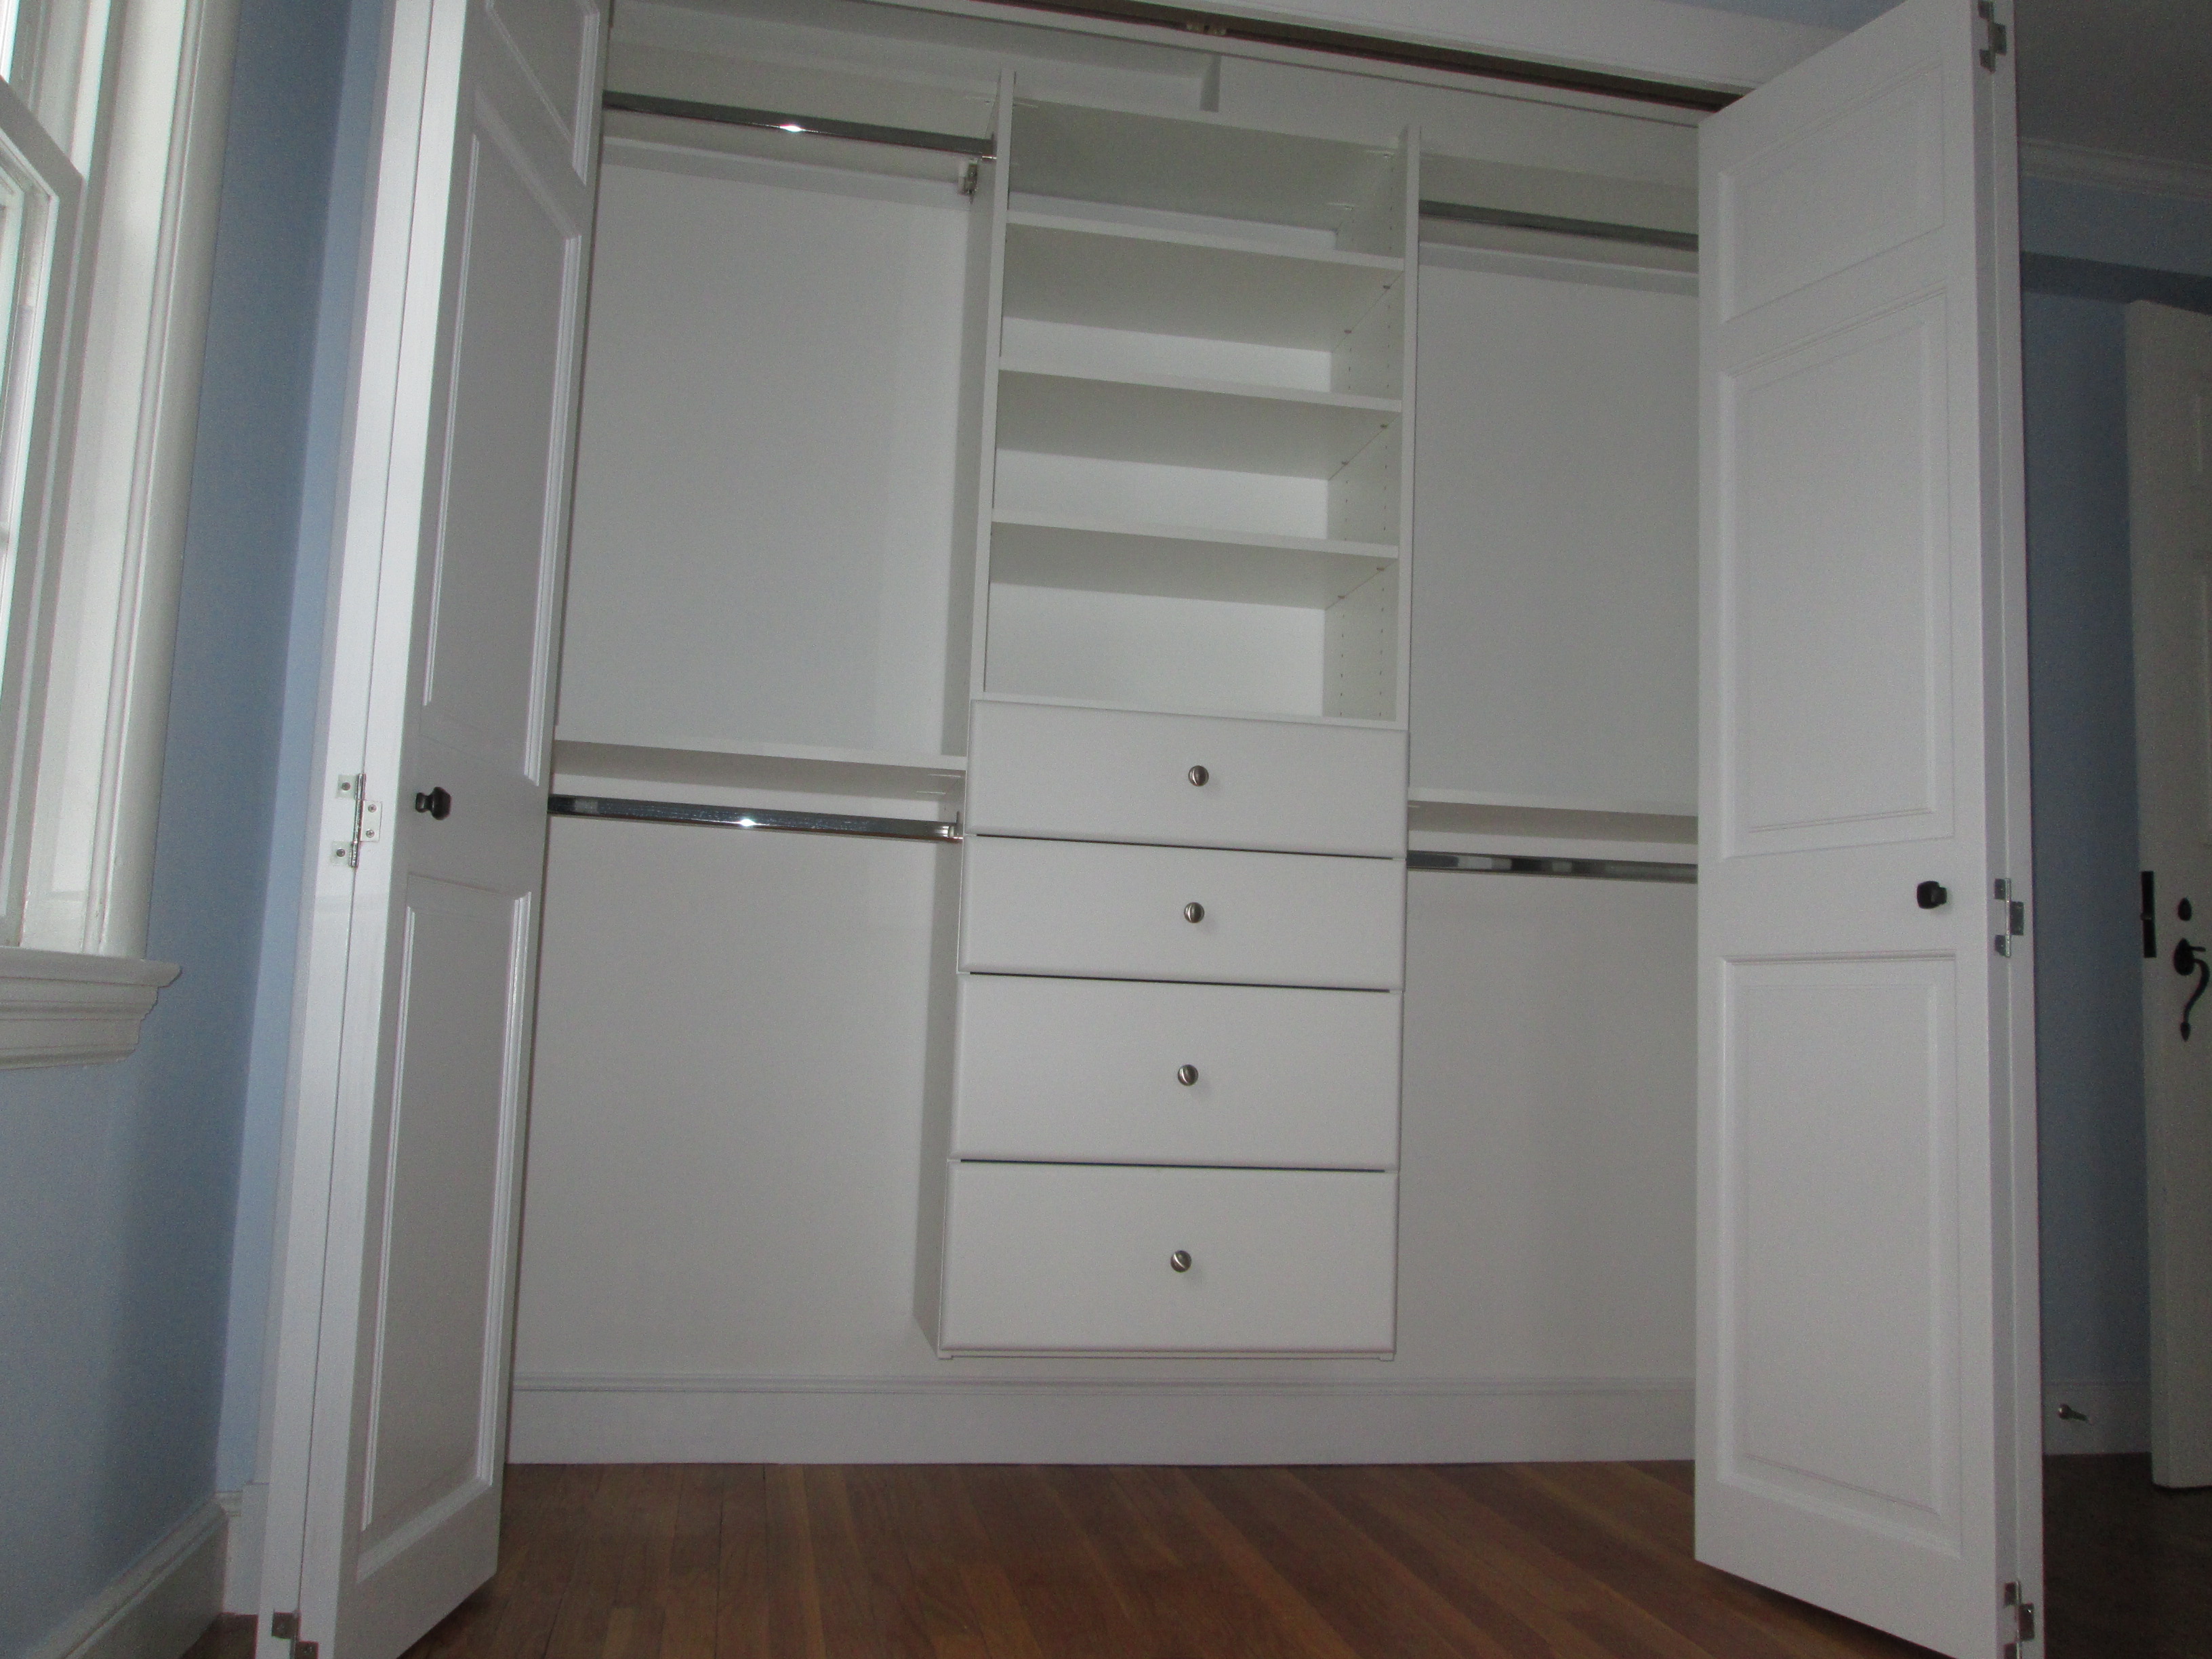 dsc02420 - bedroom 2 closet (1).jpg